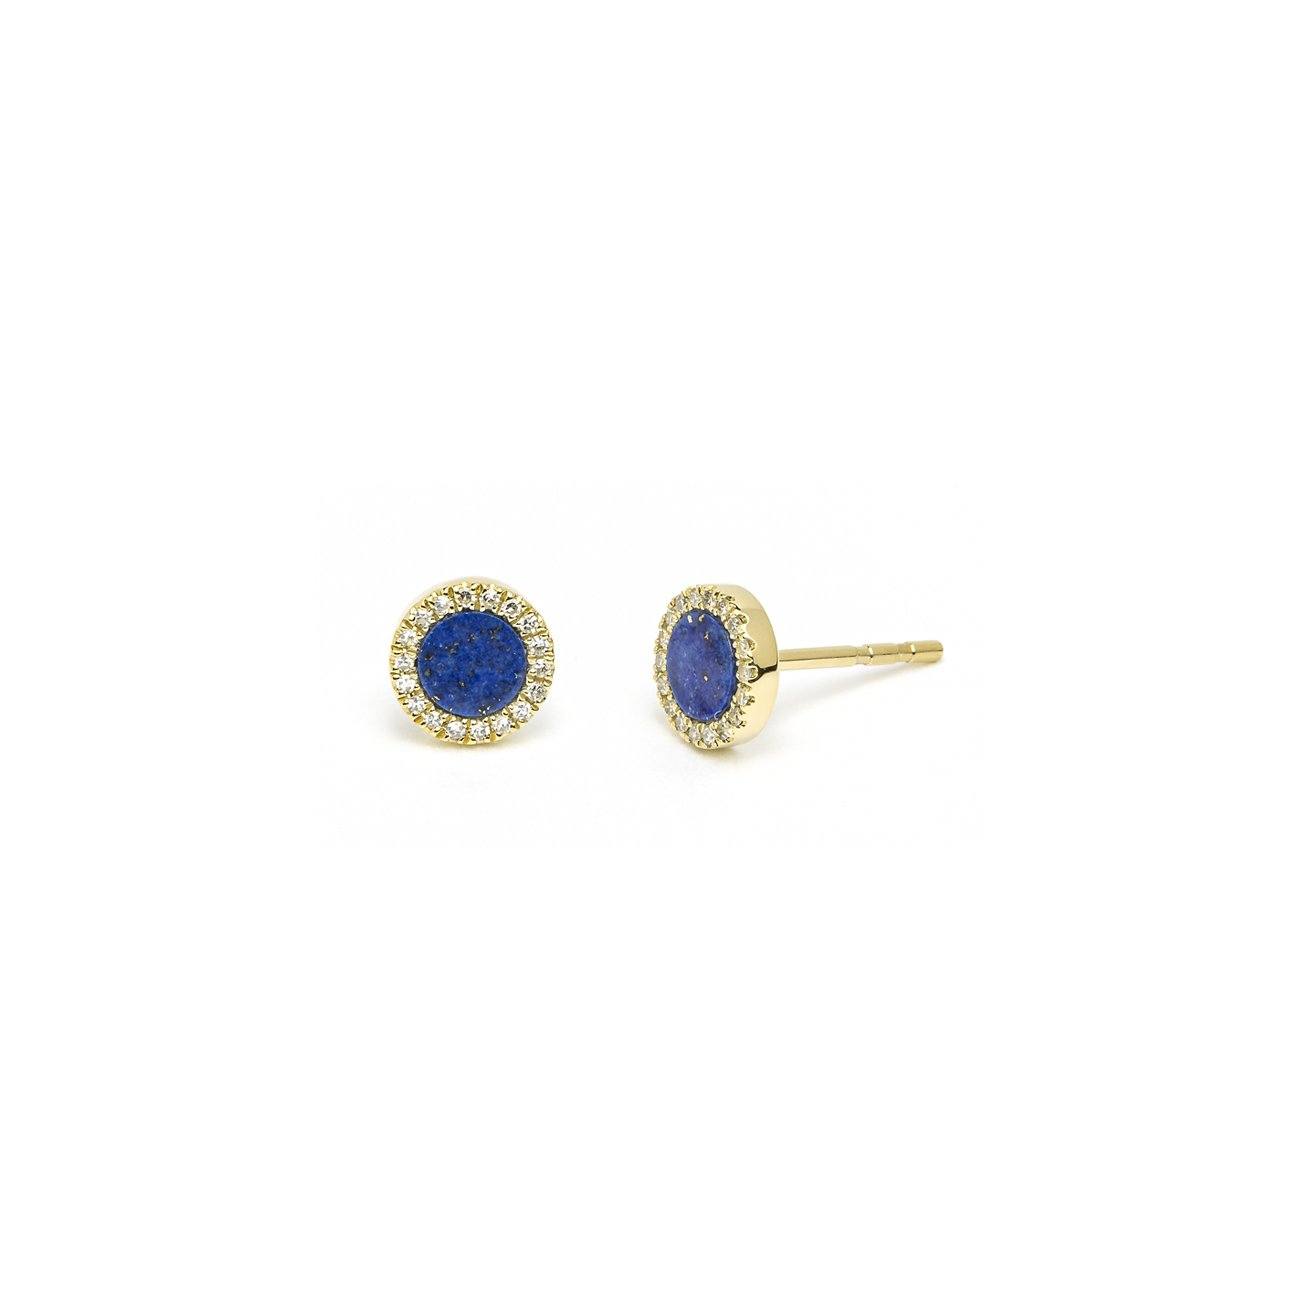 Round Lapis Lazuli & Pavé Diamond Stud Earrings Fine Jewelry Earrings Princess Bride Diamonds 